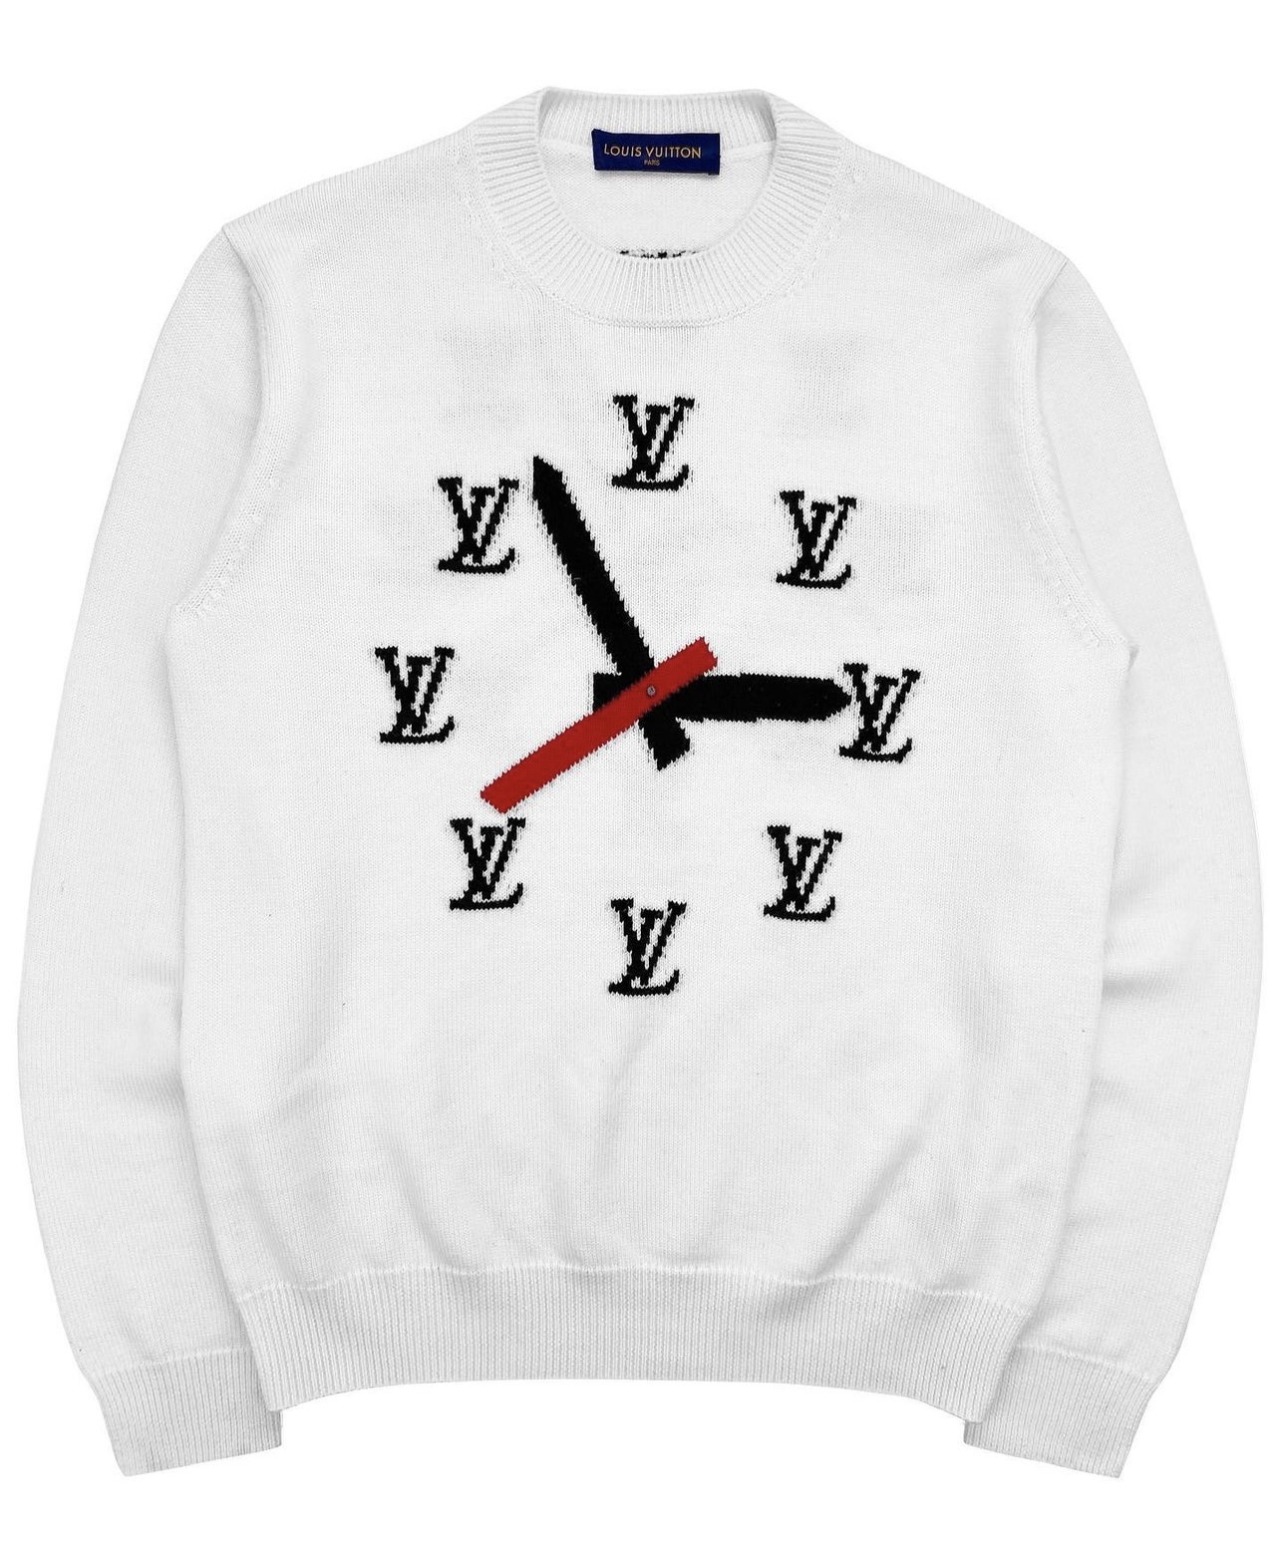 QC LV Clock Sweater by Millon : r/FashionReps